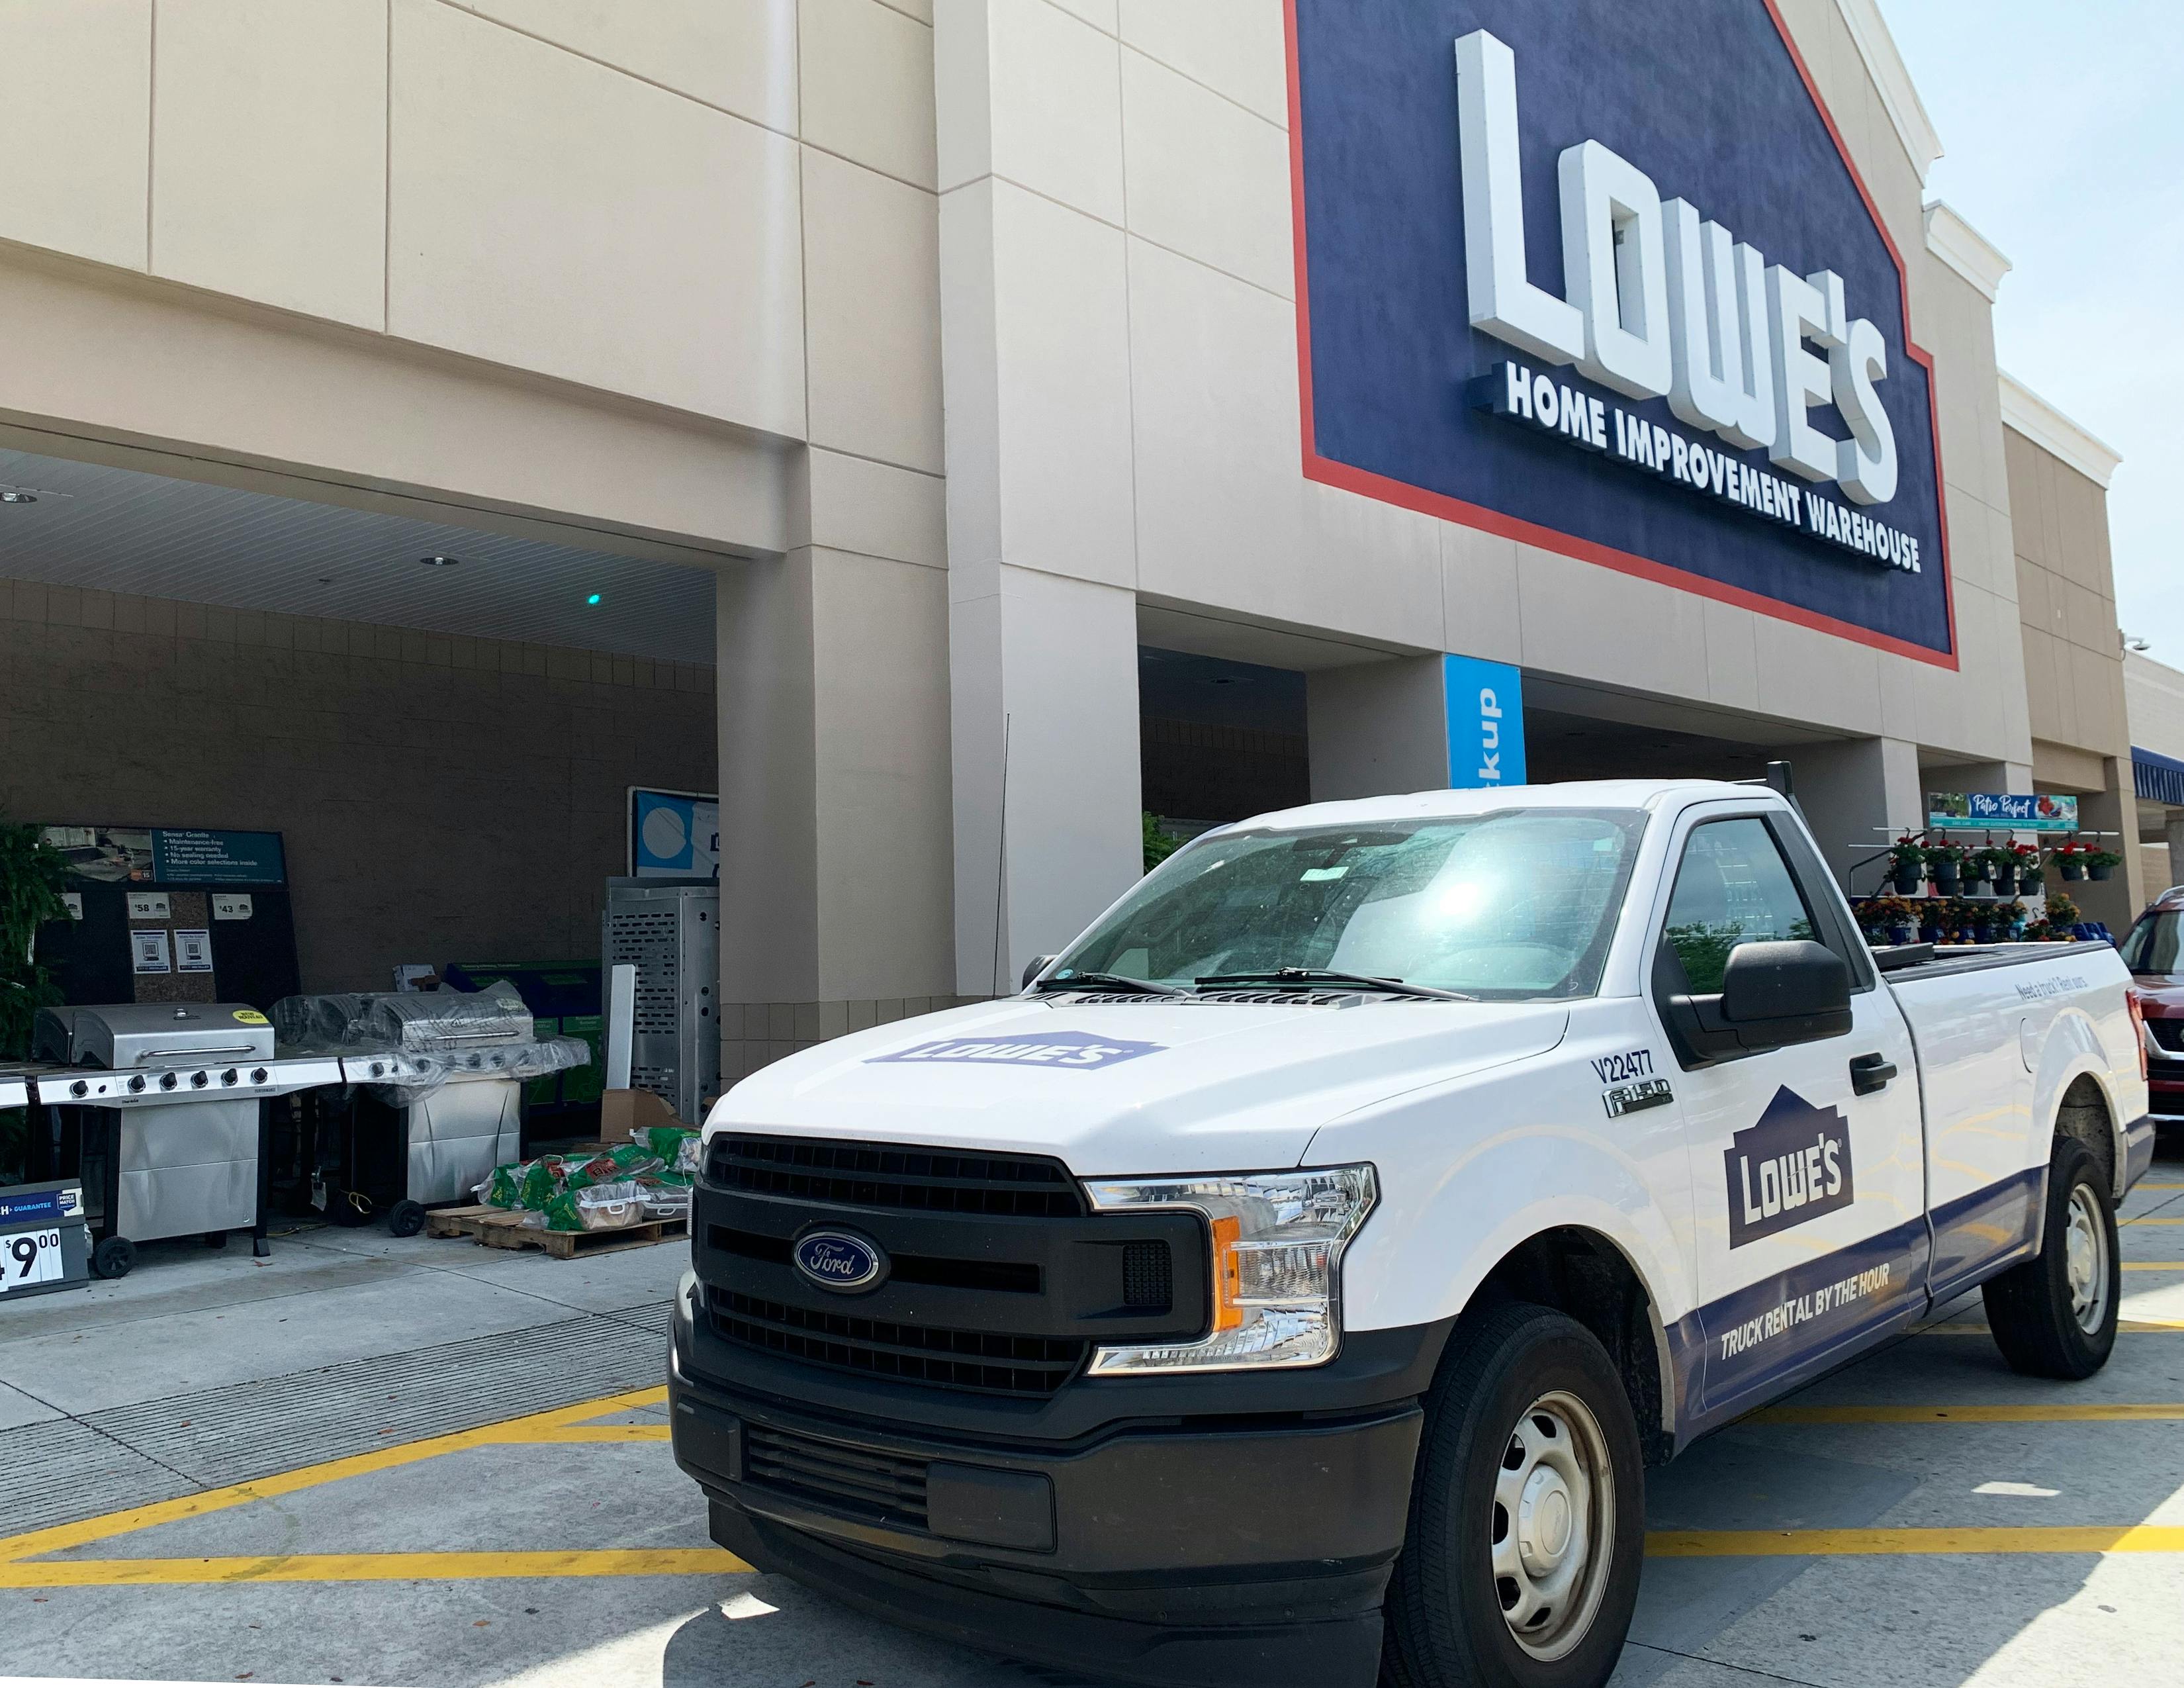 Lowe's rental truck in front of Lowe's store